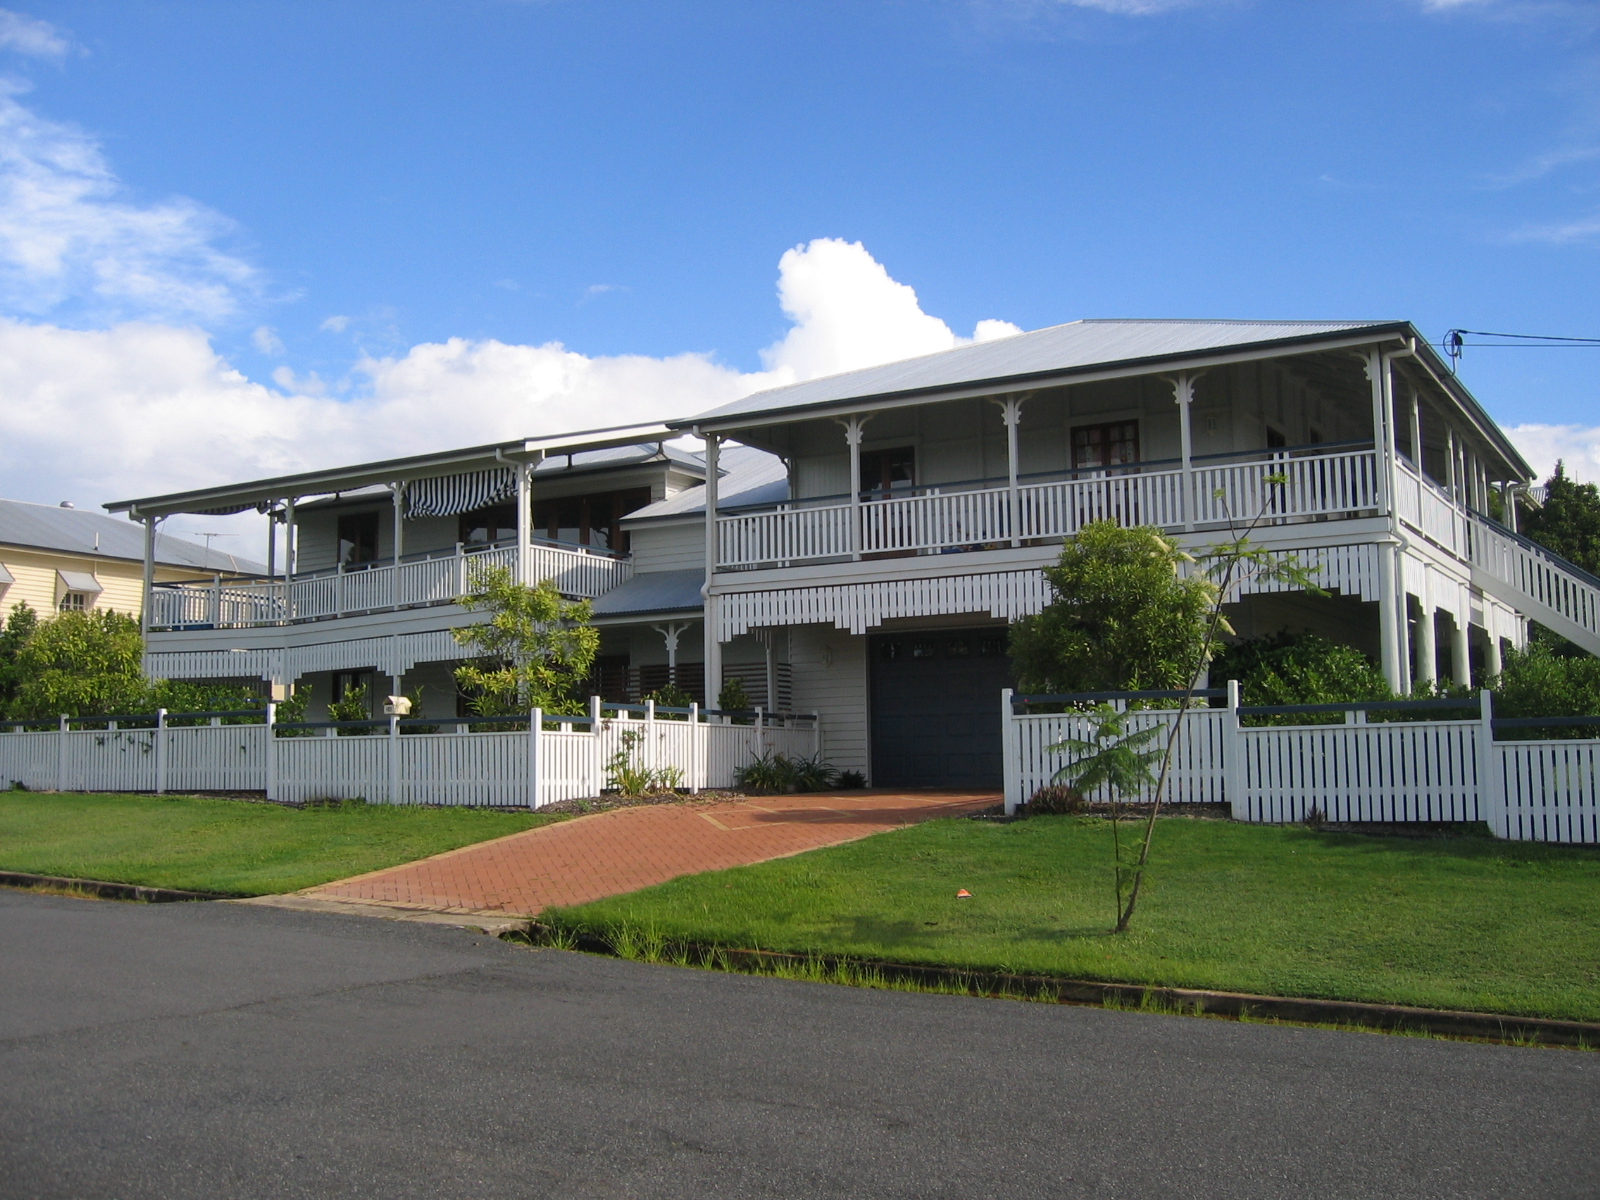 Modern Queenslander Homes